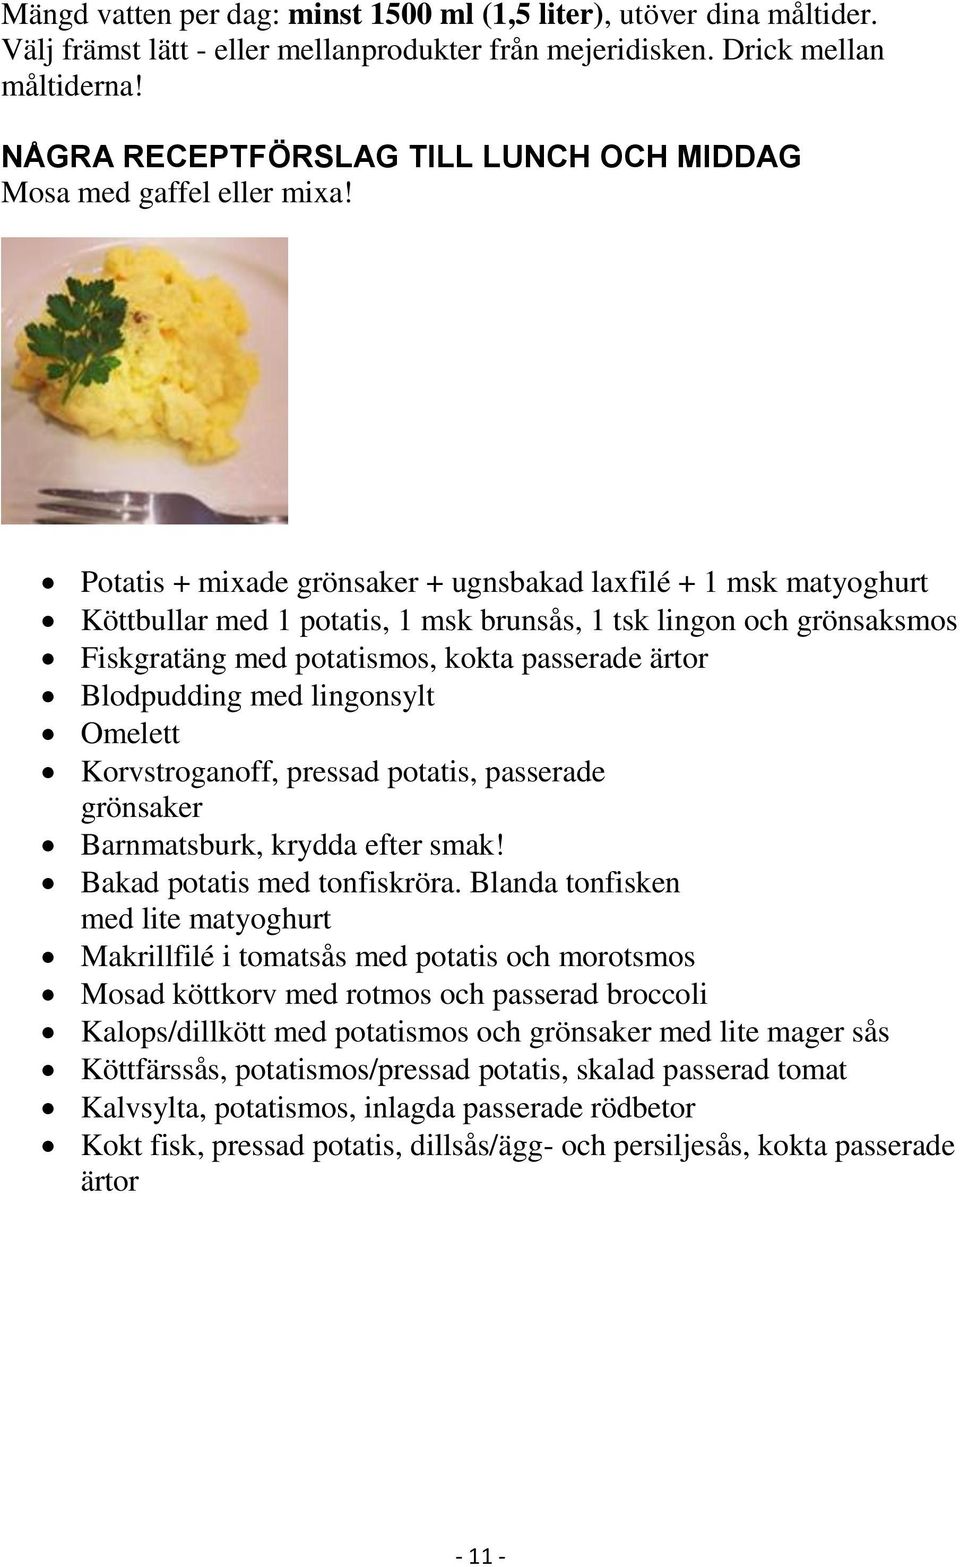 Potatis + mixade grönsaker + ugnsbakad laxfilé + 1 msk matyoghurt Köttbullar med 1 potatis, 1 msk brunsås, 1 tsk lingon och grönsaksmos Fiskgratäng med potatismos, kokta passerade ärtor Blodpudding